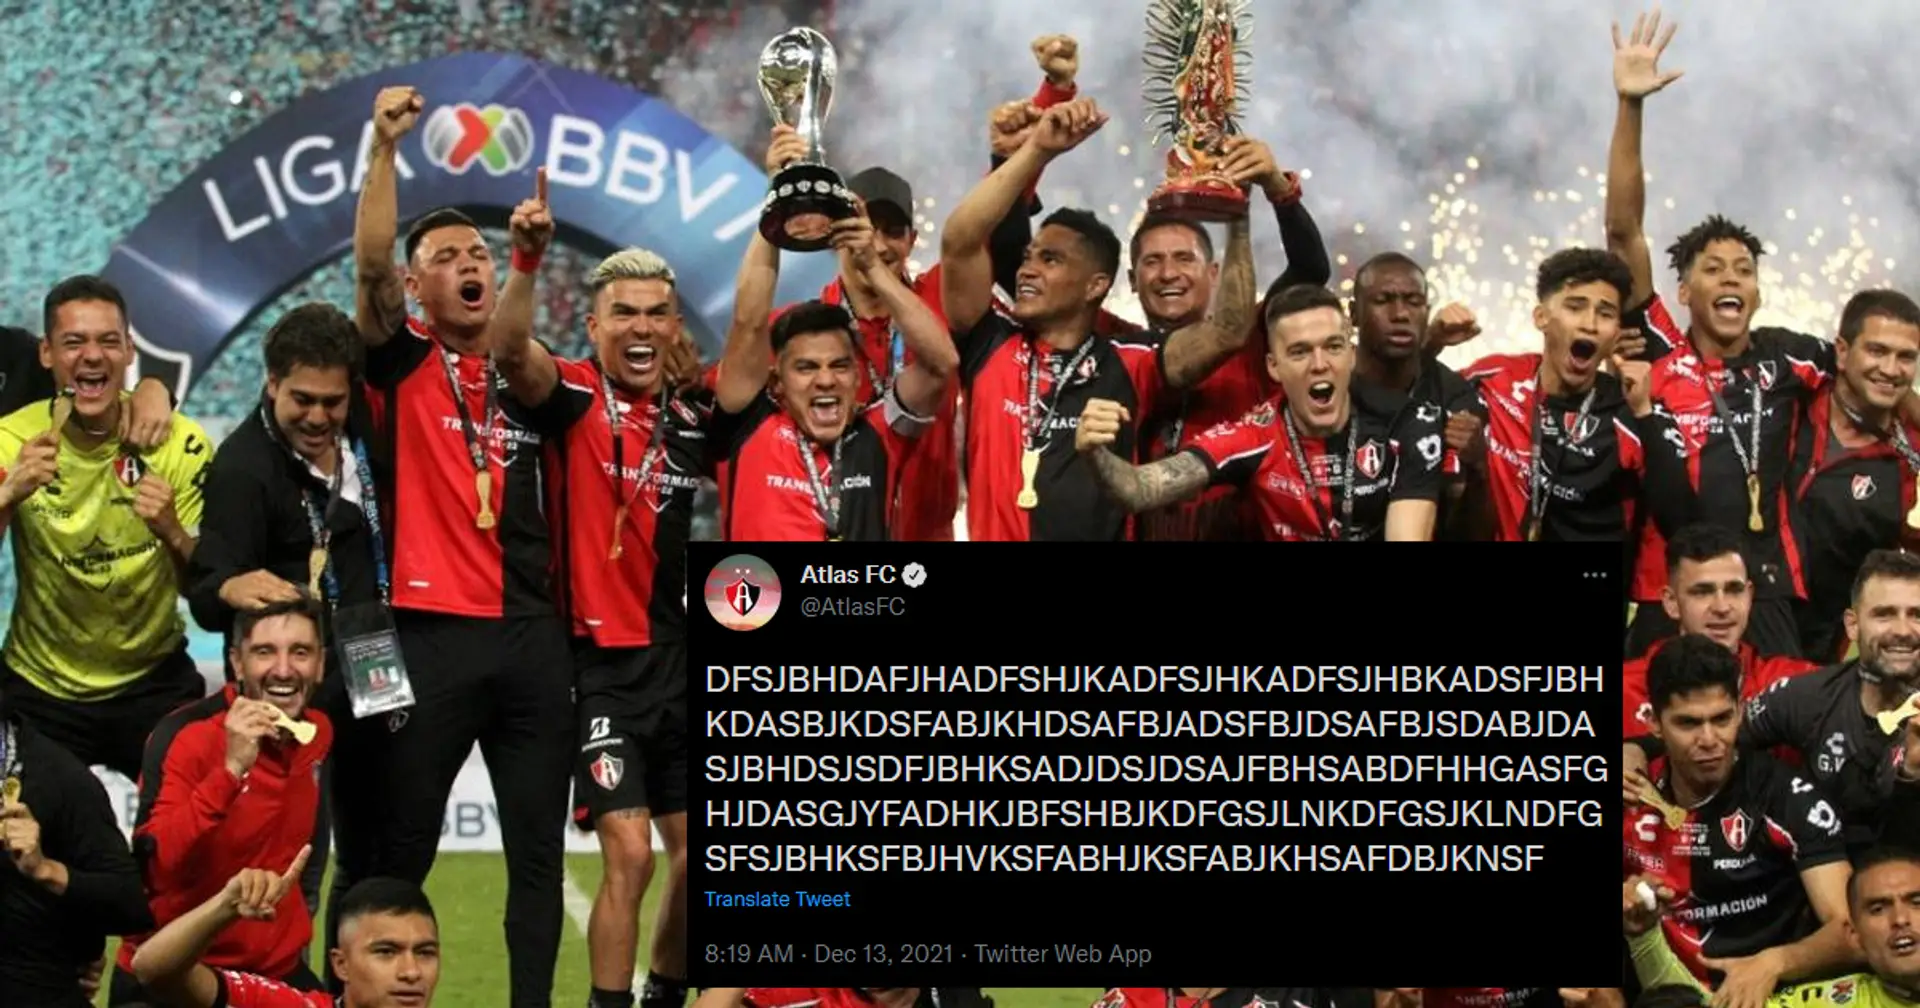 "DFSJBHDAFJHA!": Mexikanischer Verein FC Atlas gewinnt mit lustigem Tweet nach Titelgewinn tausende neue Fans